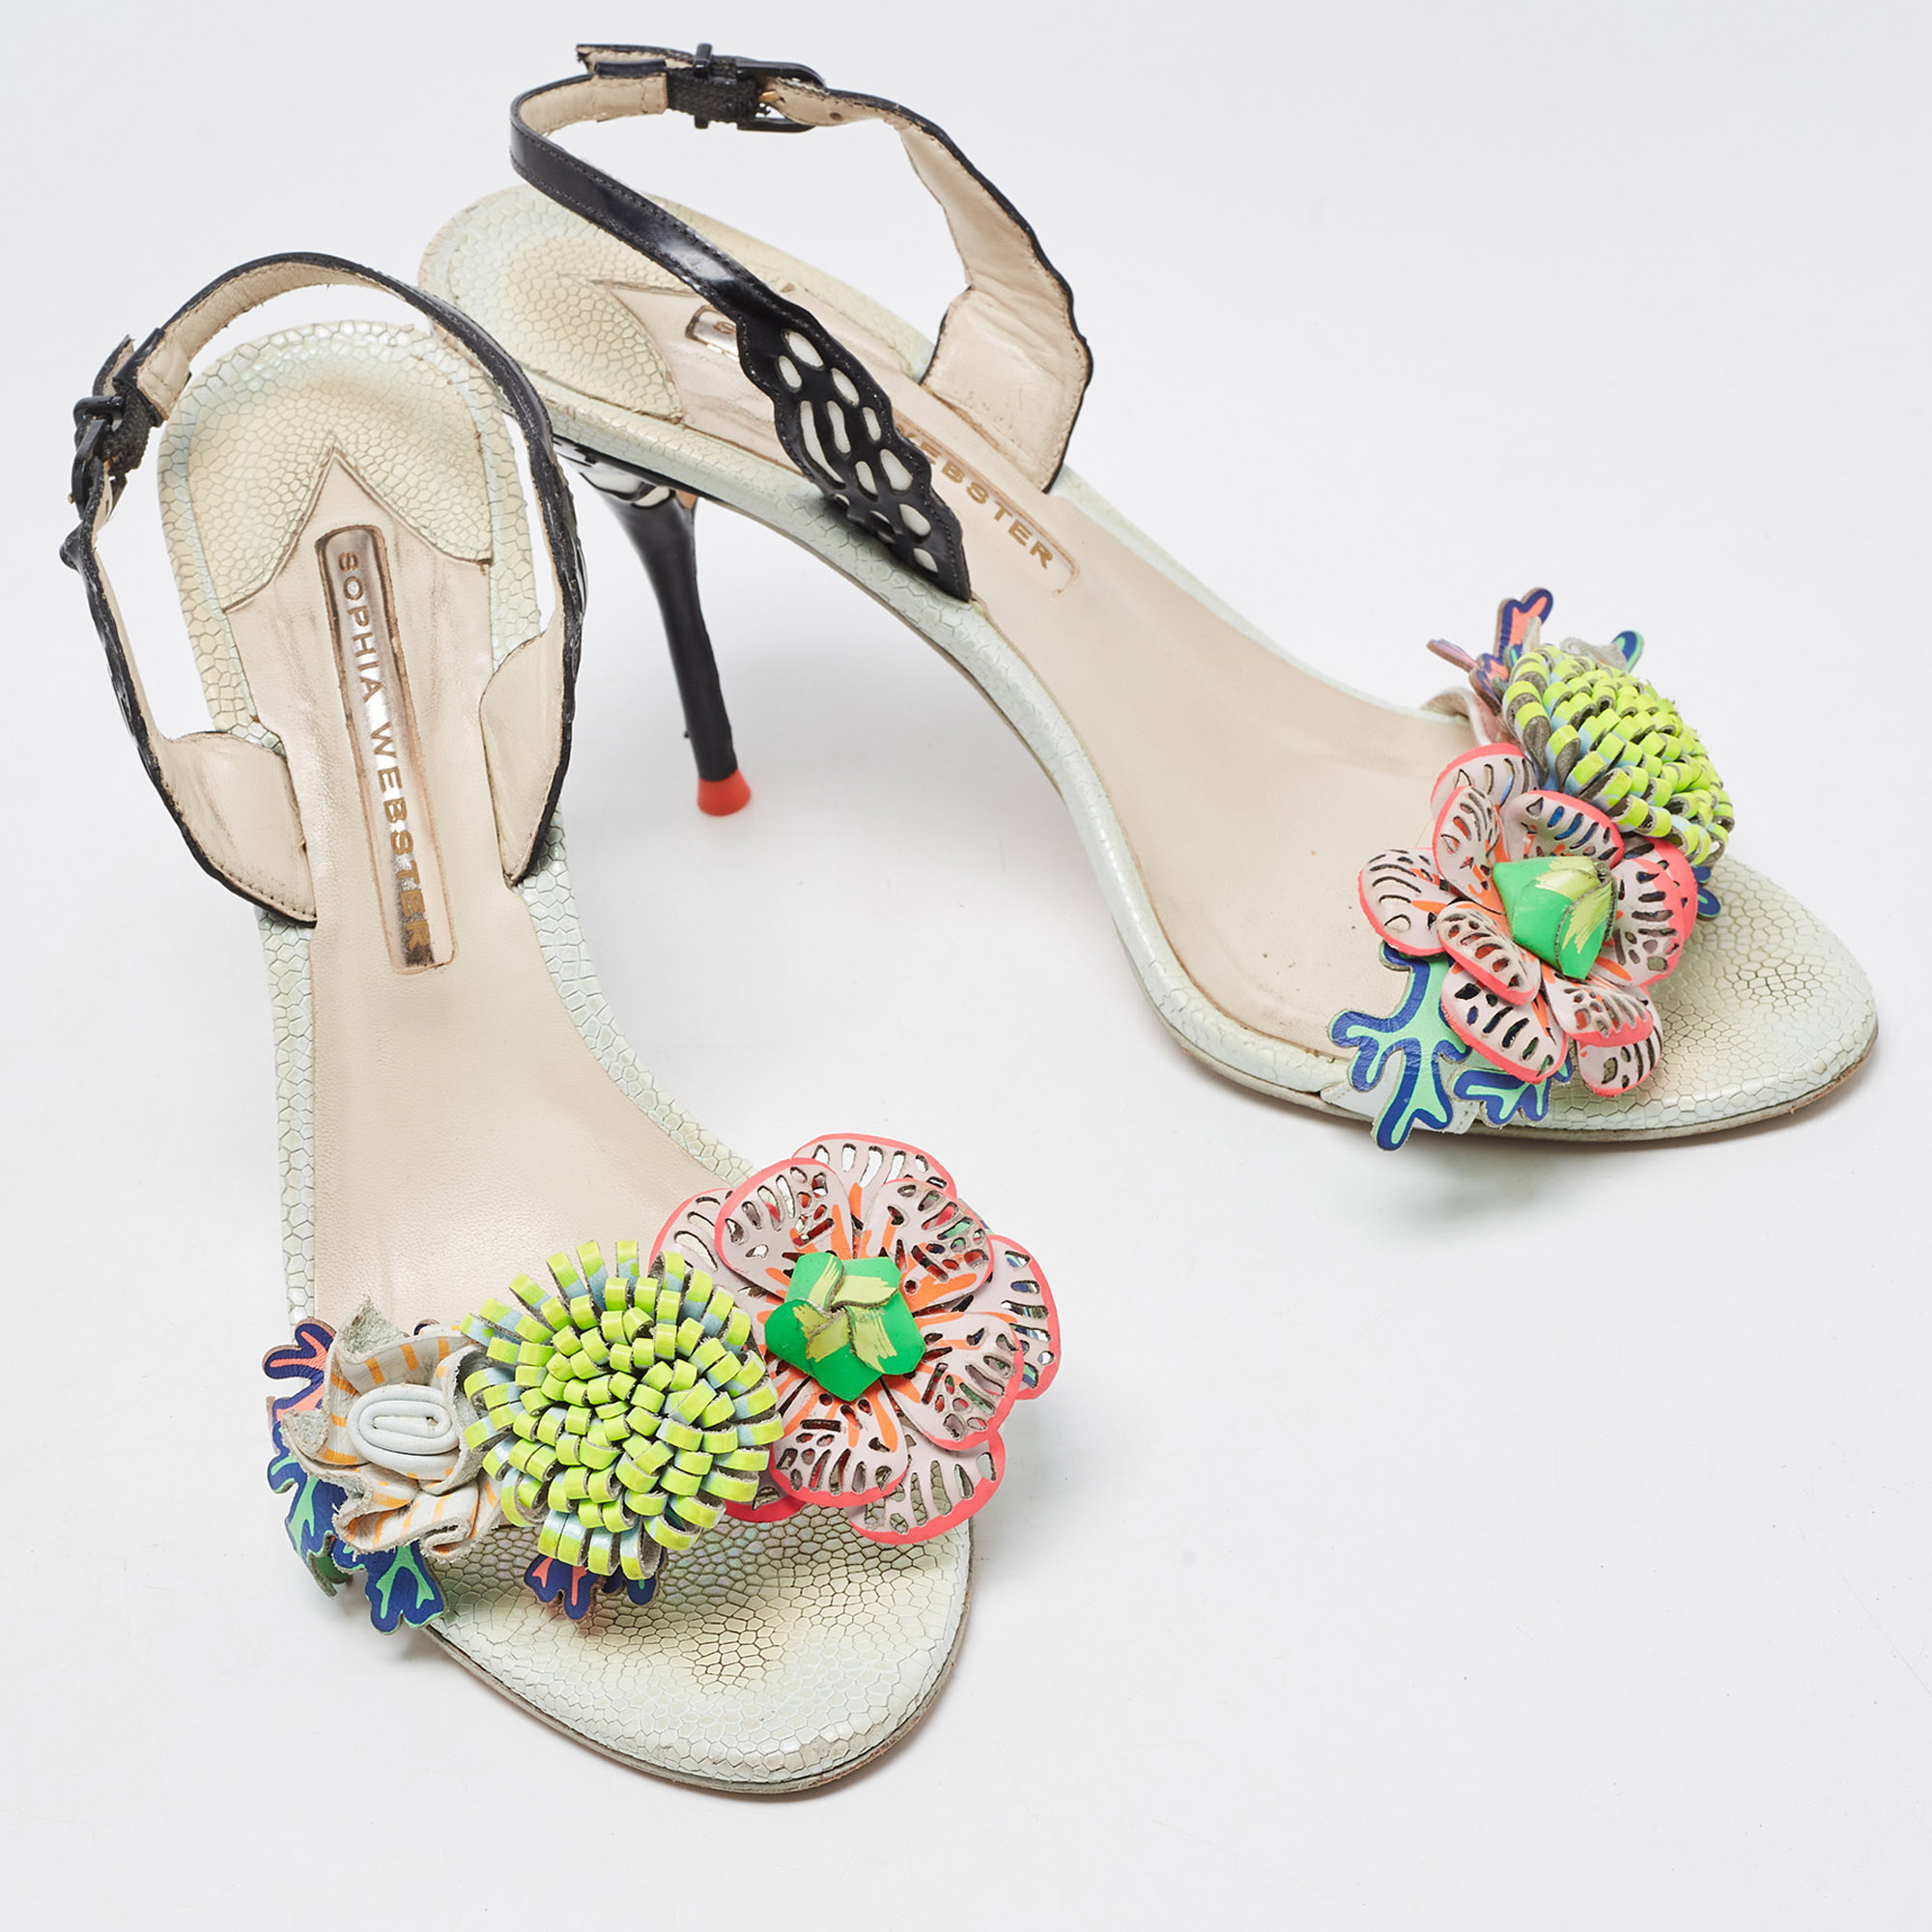 Sophia Webster Multicolor Leather Lilico Underwater Floral Embellished Ankle Strap Sandals Size 38.5